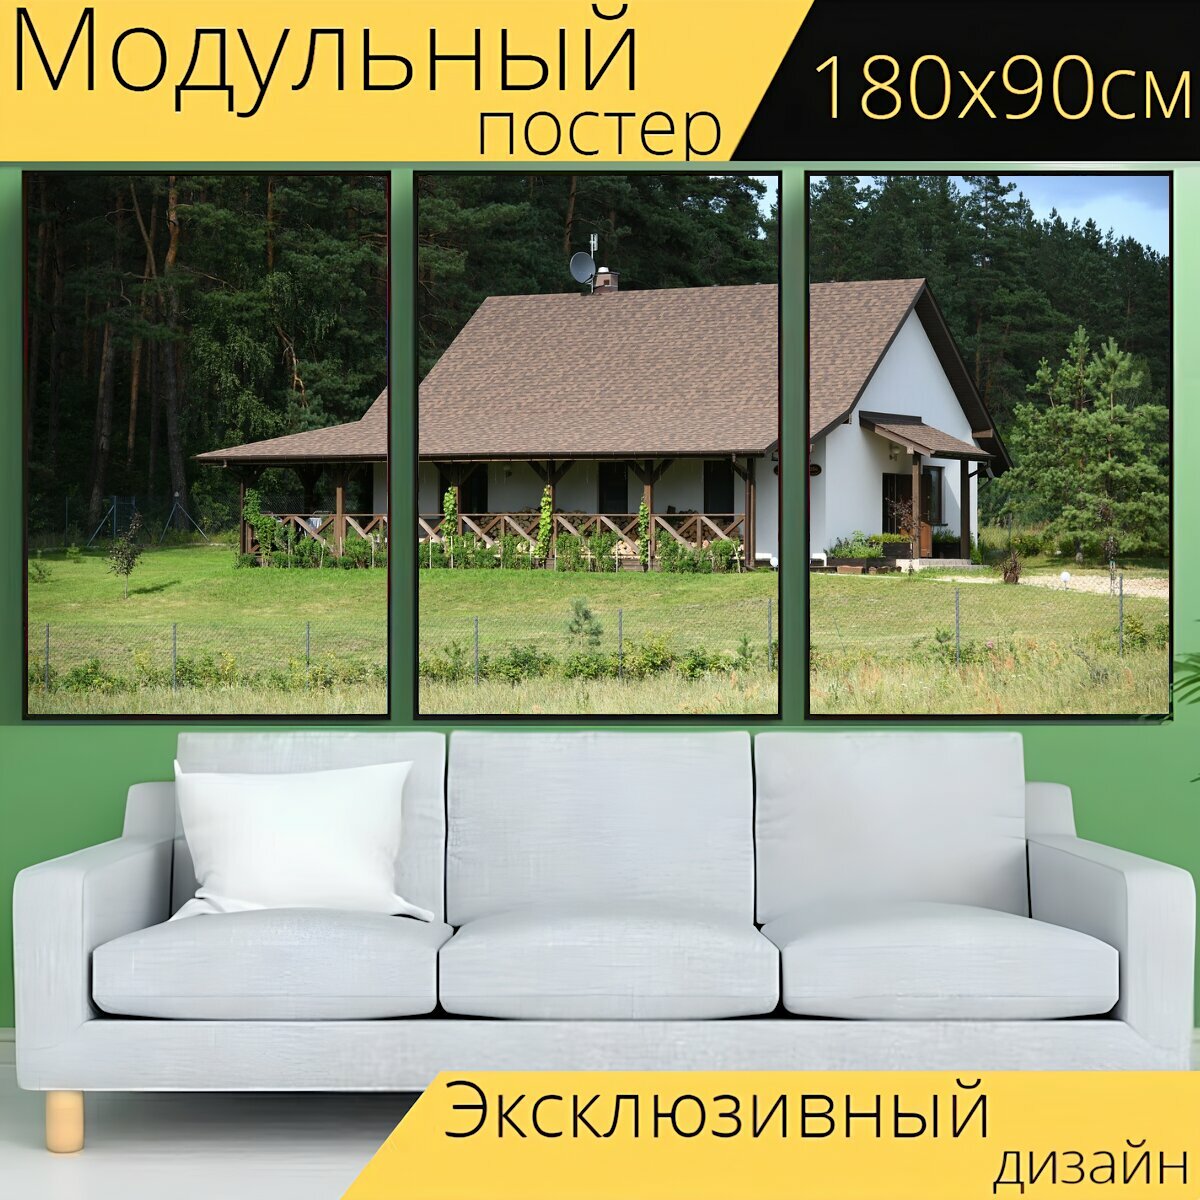 Модульный постер "Дом, дом отдыха, дача" 180 x 90 см. для интерьера